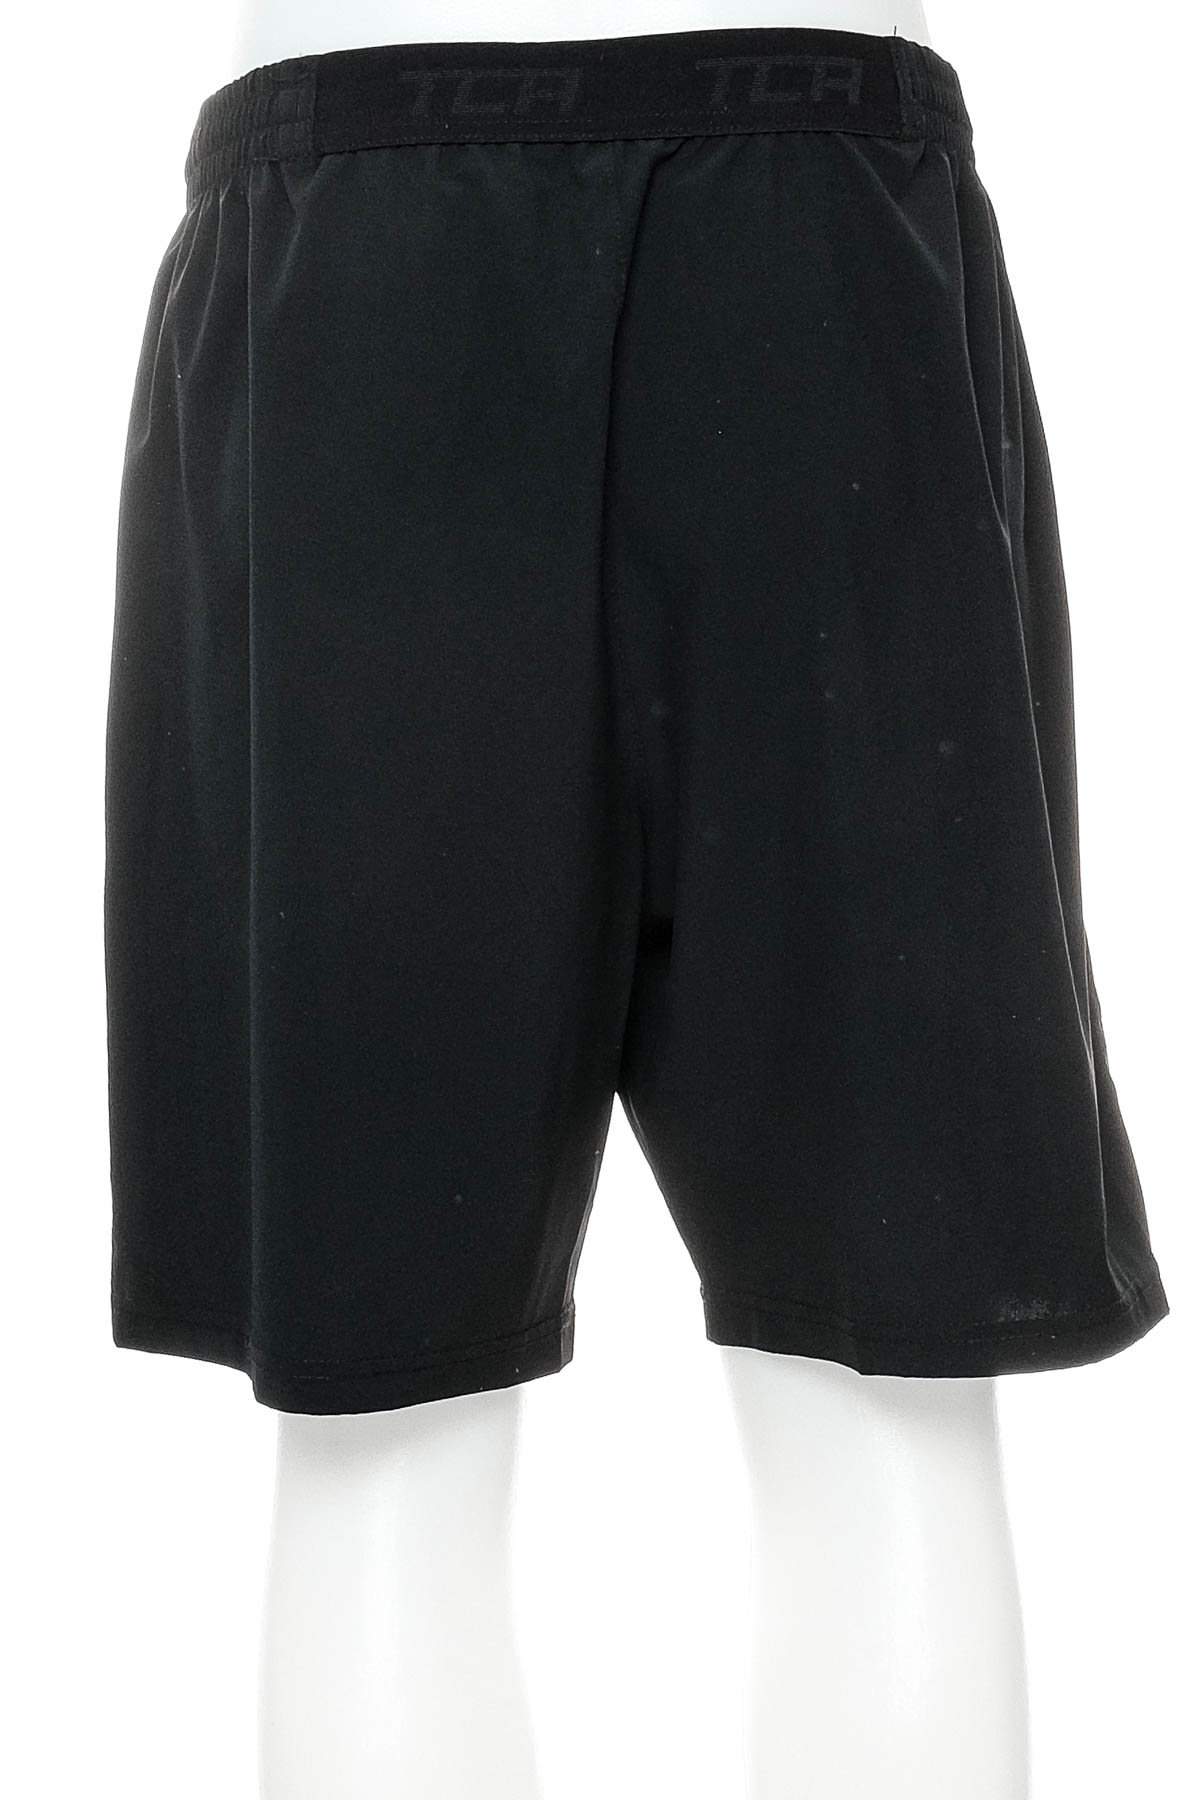 Men's shorts - TCA - 1